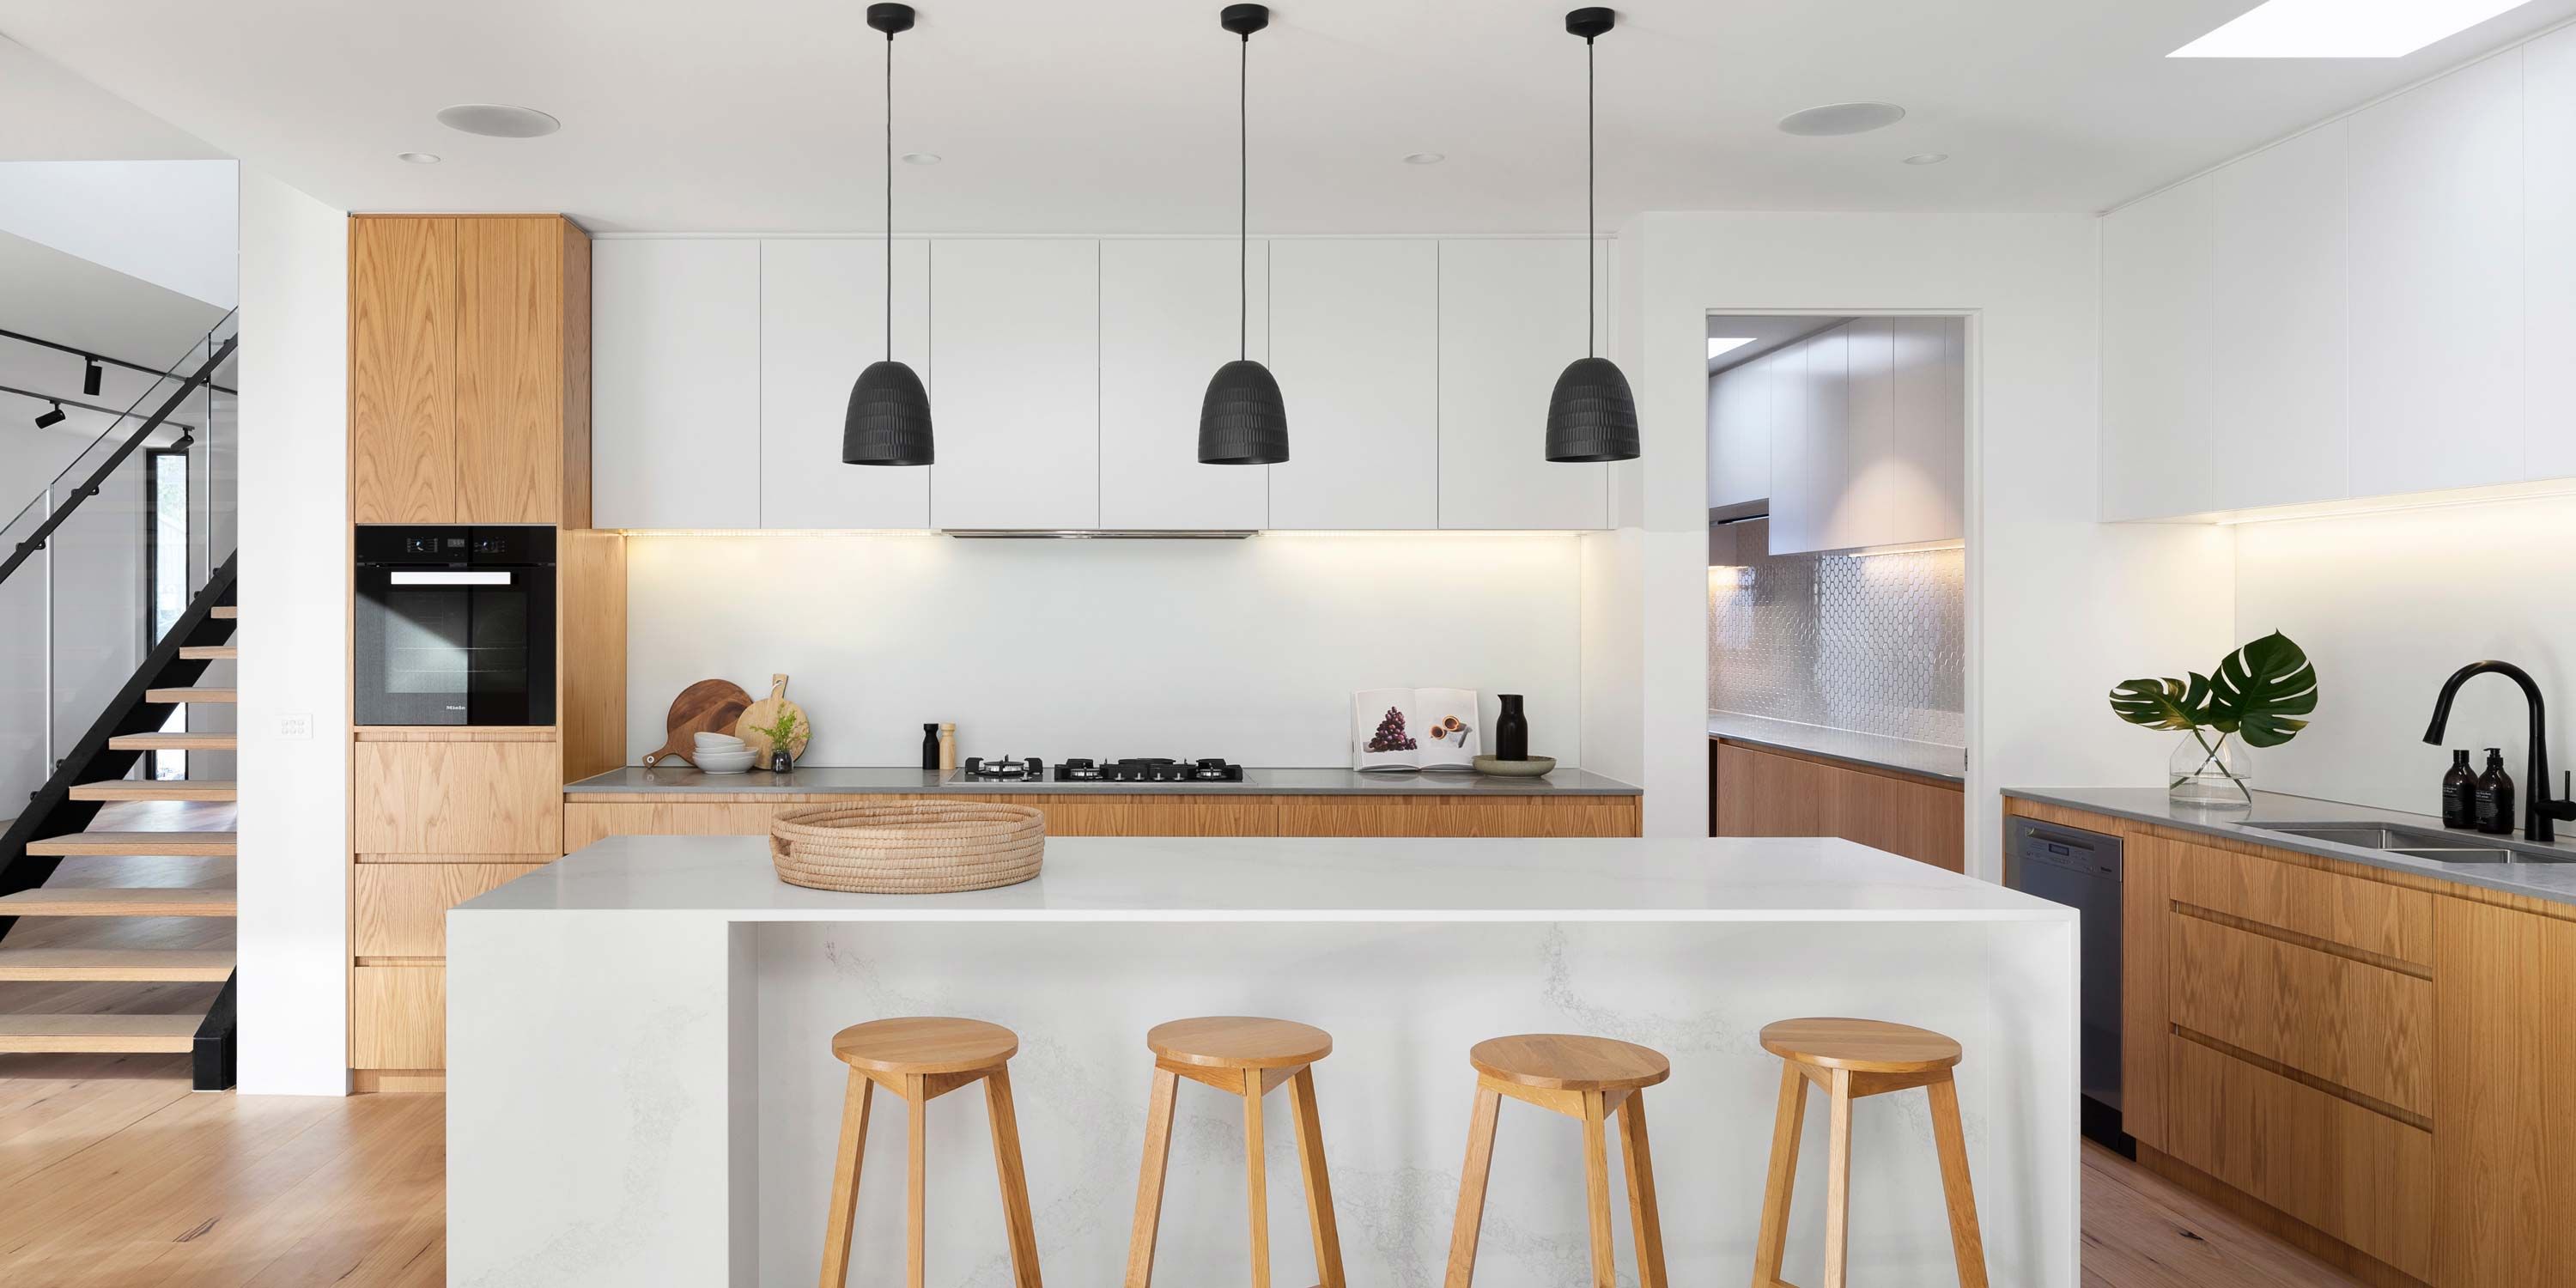 kitchen, modern, clean, white cabinets, black lights